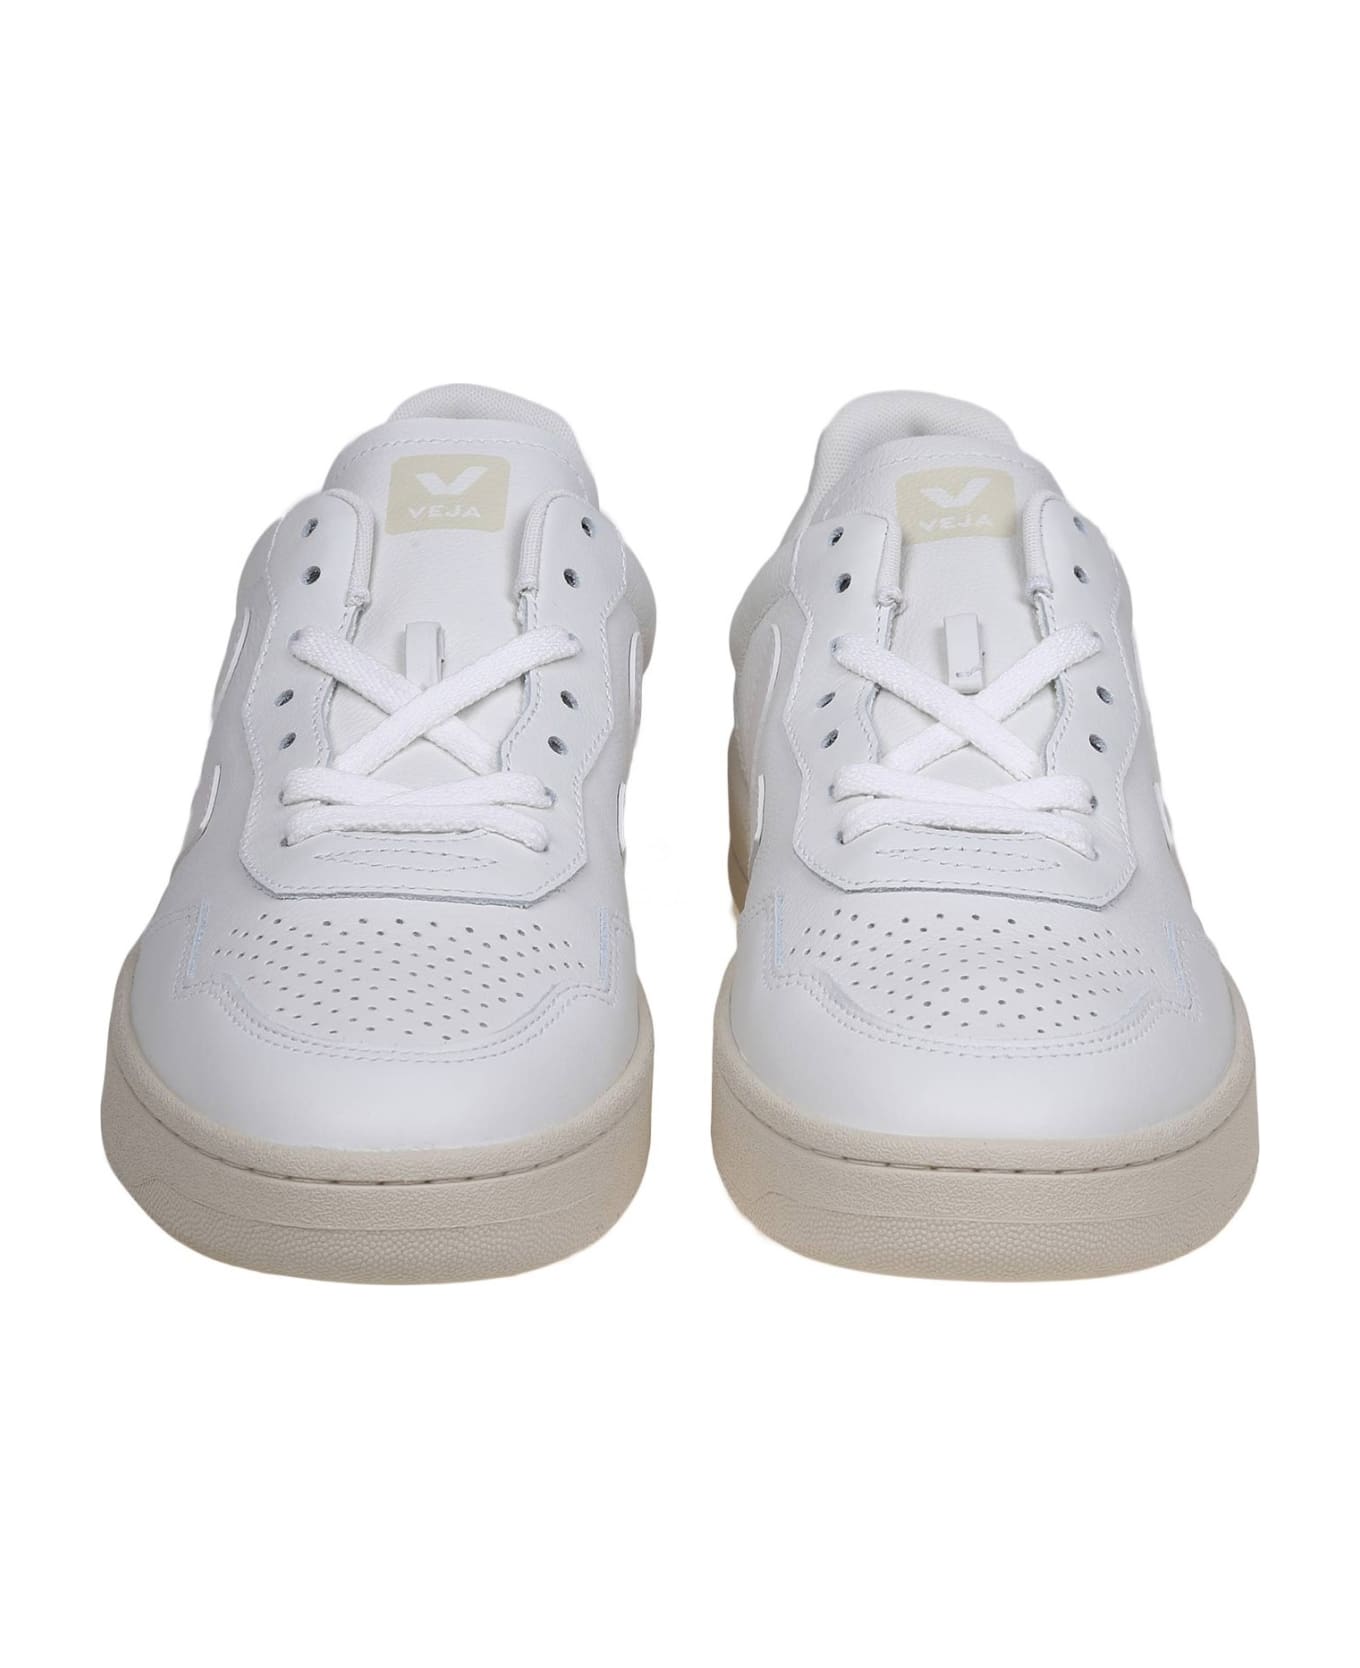 Veja V 90 Sneakers In White Leather